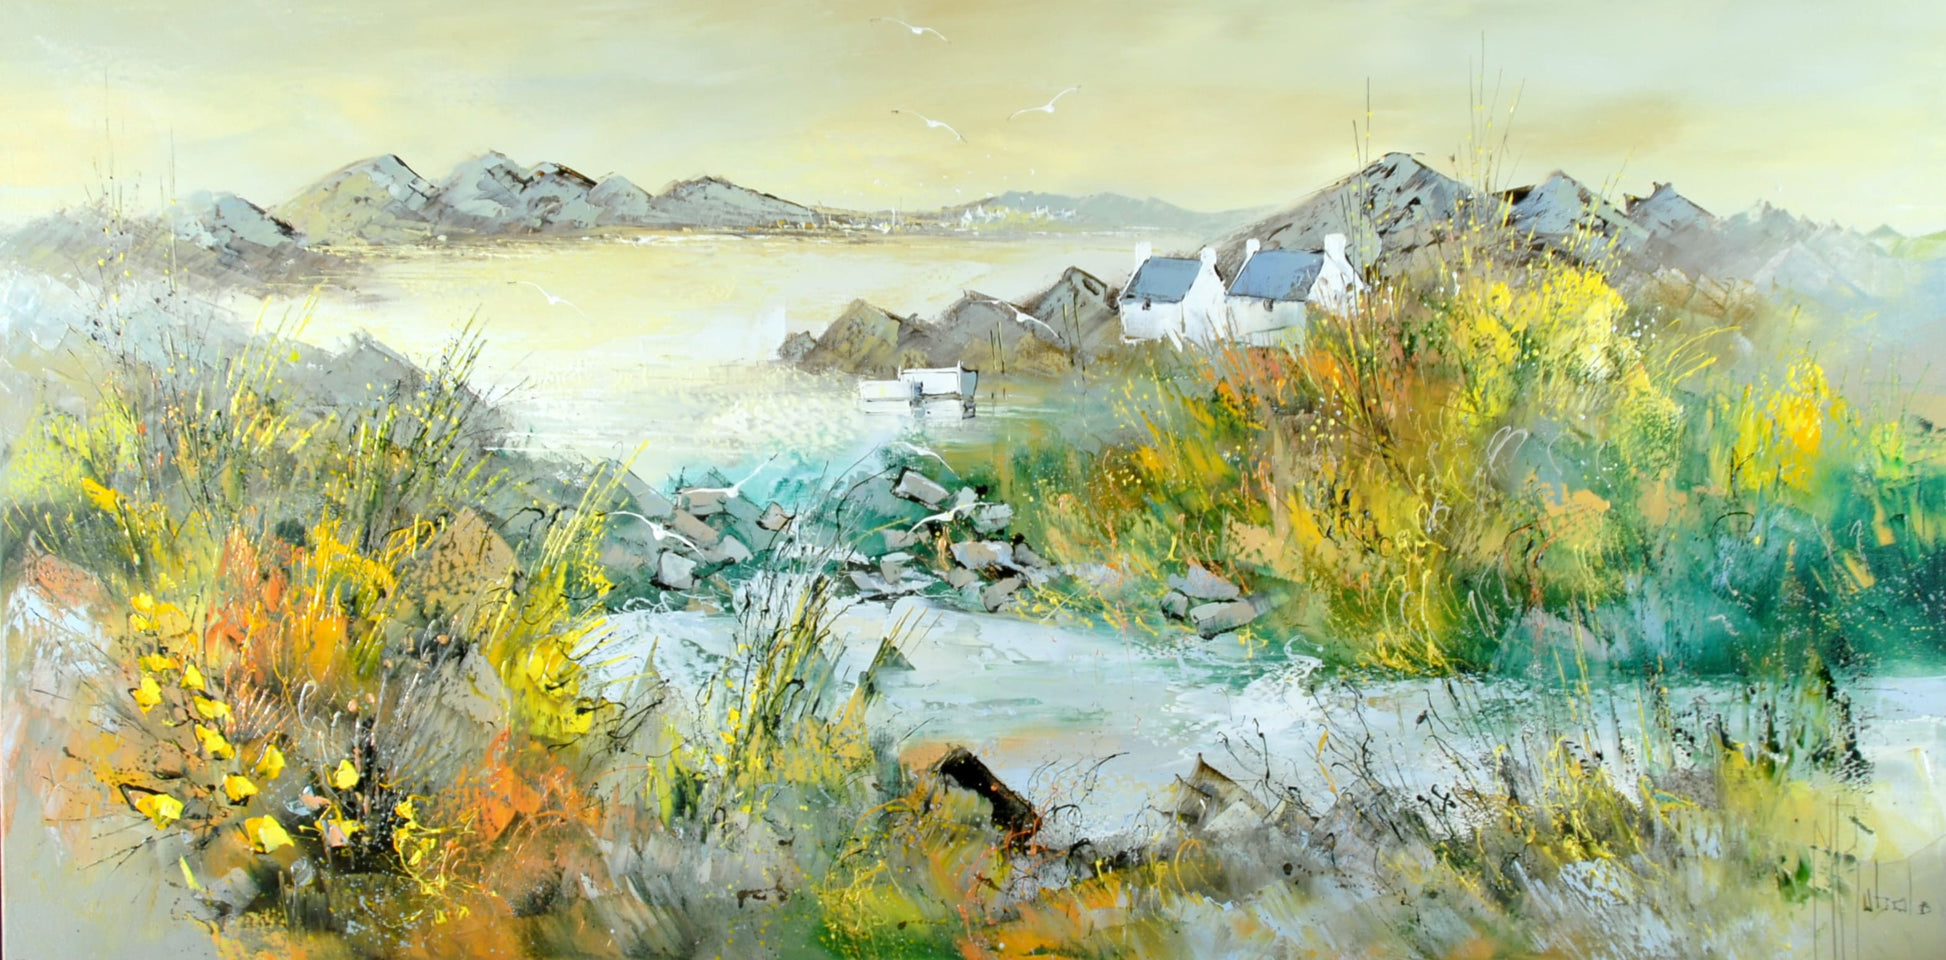 マニュエル・リュバロ　油彩６０ｘ１２０ｃｍ　２００８年制作　ブルターニュ半島の海辺に黄色い花や黄色く色づいた草が描かれている。静寂な海辺の色彩を感じさせない風景に、黄色い草花の明るく強烈な黄色がショックを与えている。